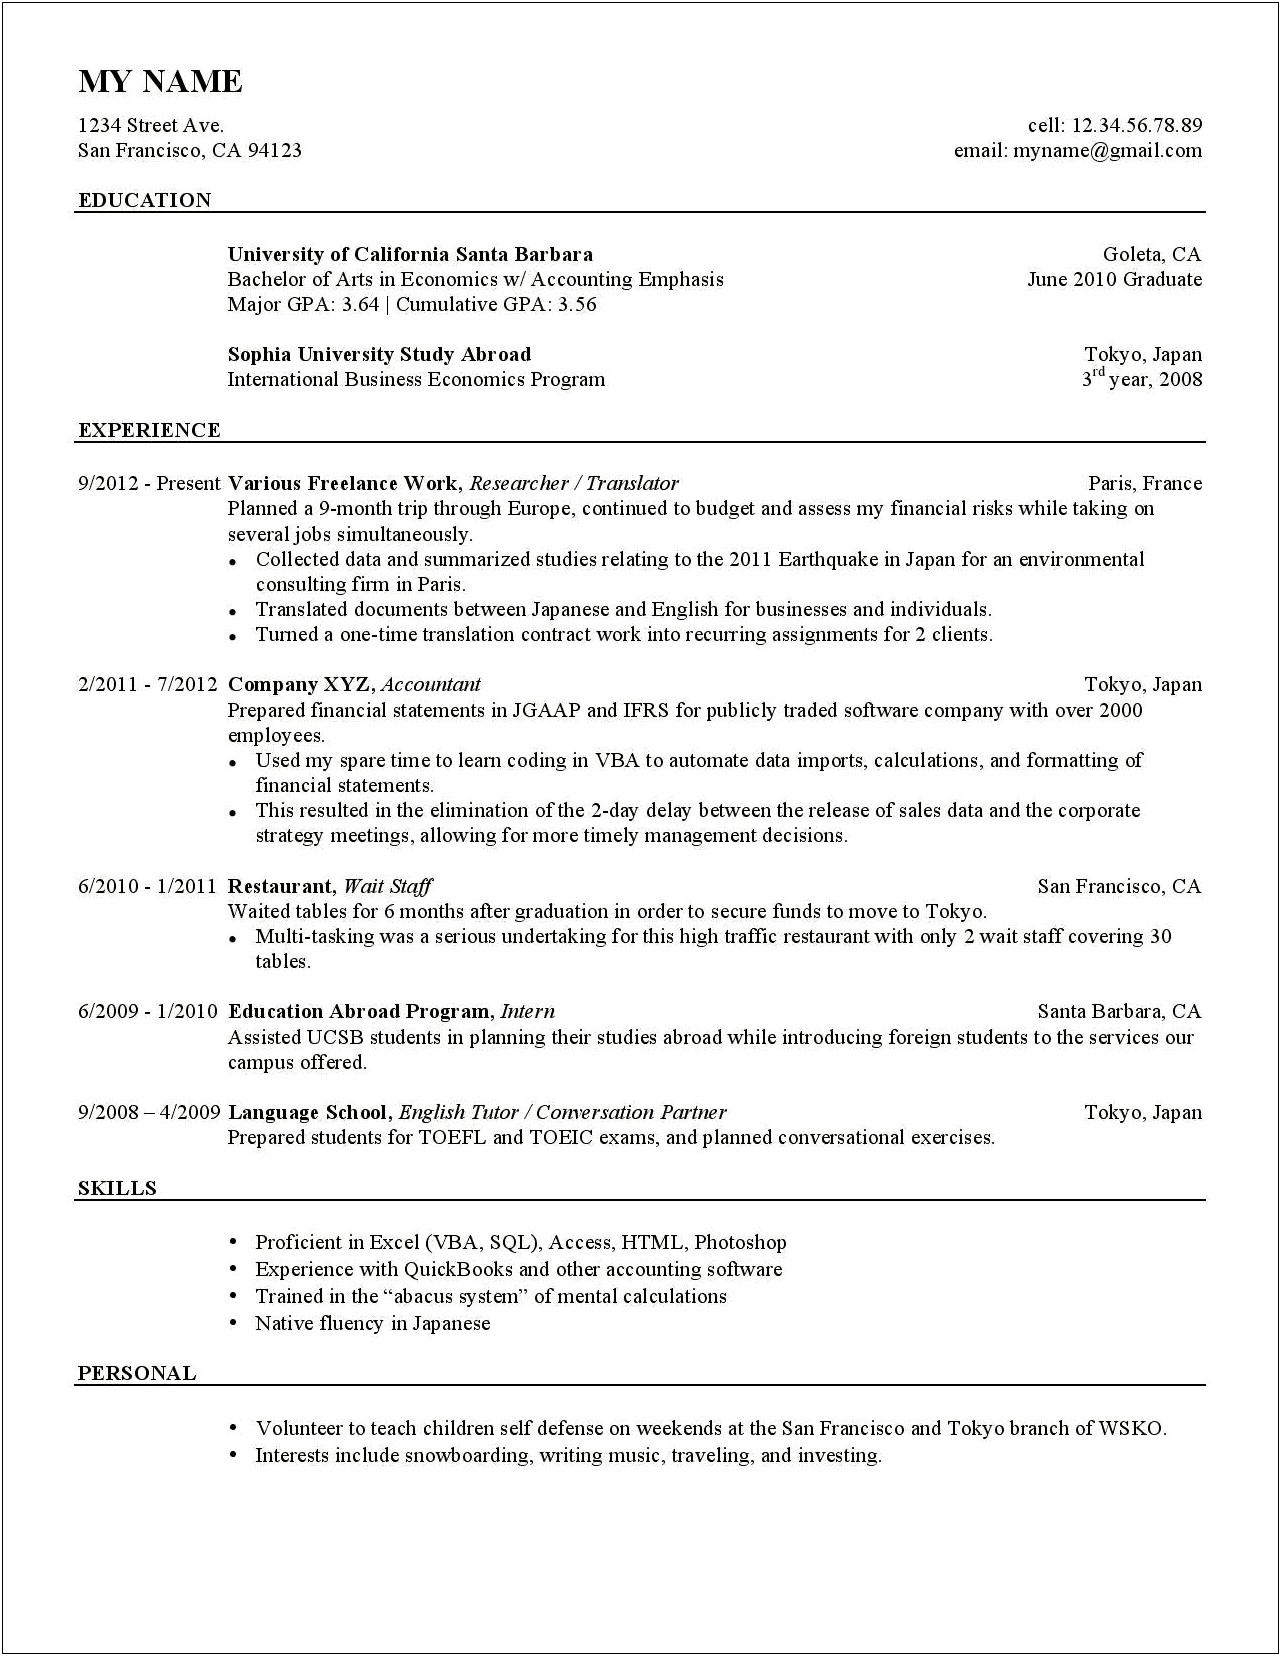 Resume Order Of Jobs Reddit